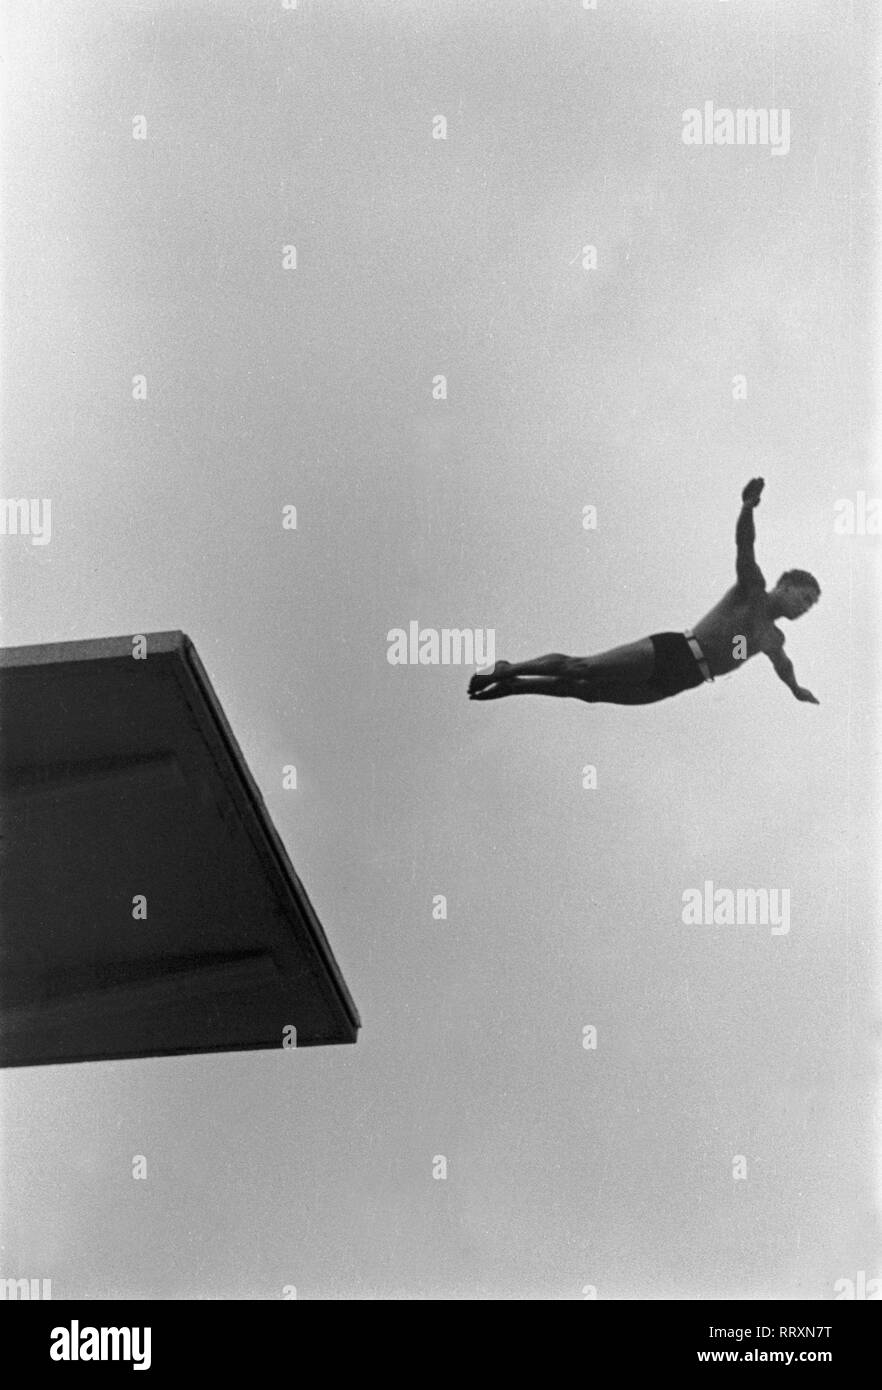 Jeux Olympiques d'été 1936 - L'Allemagne, Troisième Reich - Jeux Olympiques Jeux Olympiques d'été de 1936, à Berlin. Compétition de natation hommes au stade de natation - plate-forme diver - voir du saut. L'image date d'août 1936. Photo Erich Andres Banque D'Images